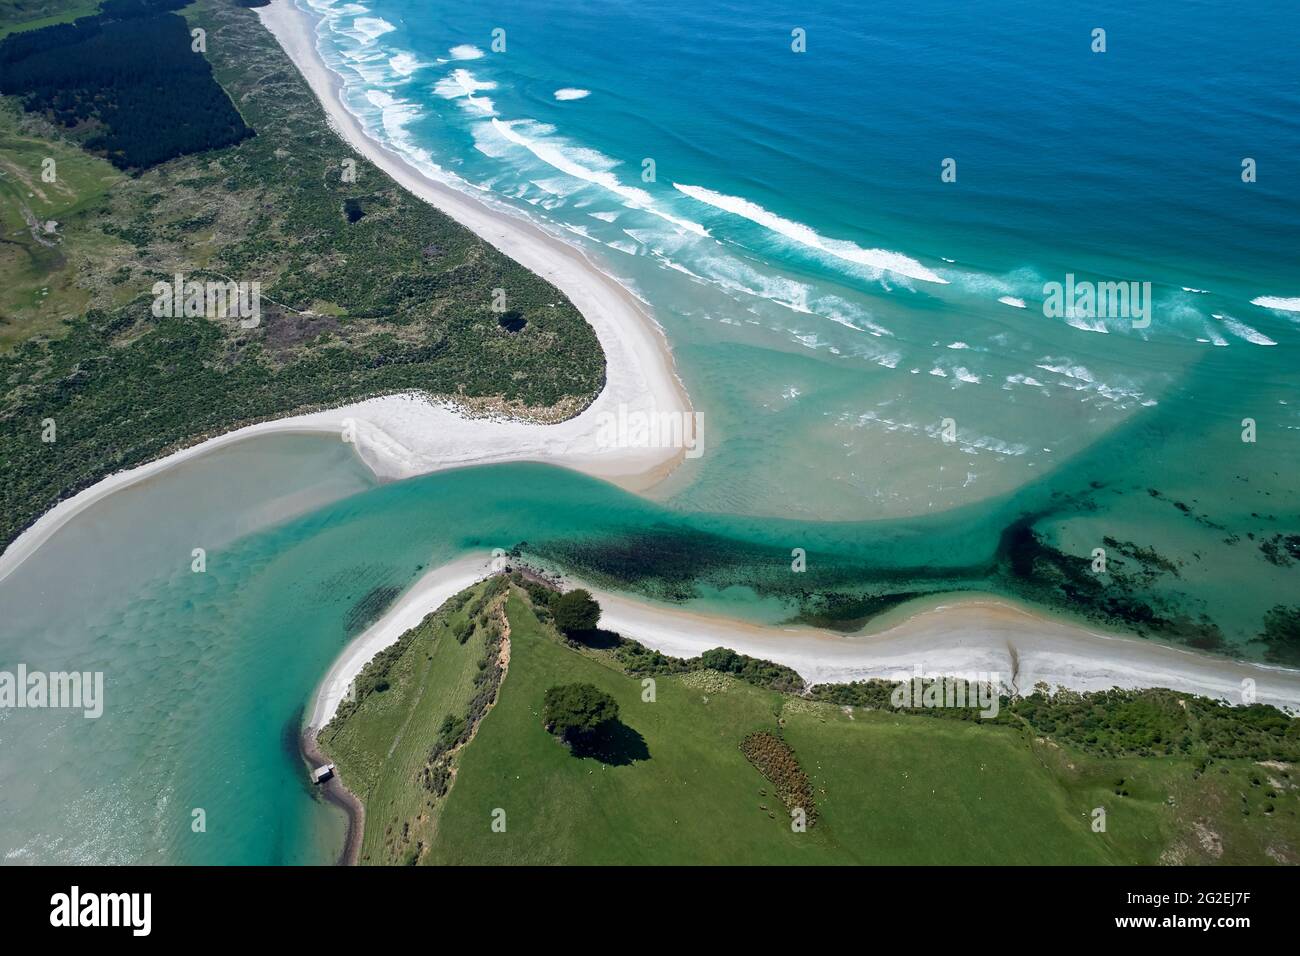 Hoopers Inlet e Allans Beach, la Penisola di Otago, Dunedin, Isola del Sud, Nuova Zelanda - aereo drone Foto Stock